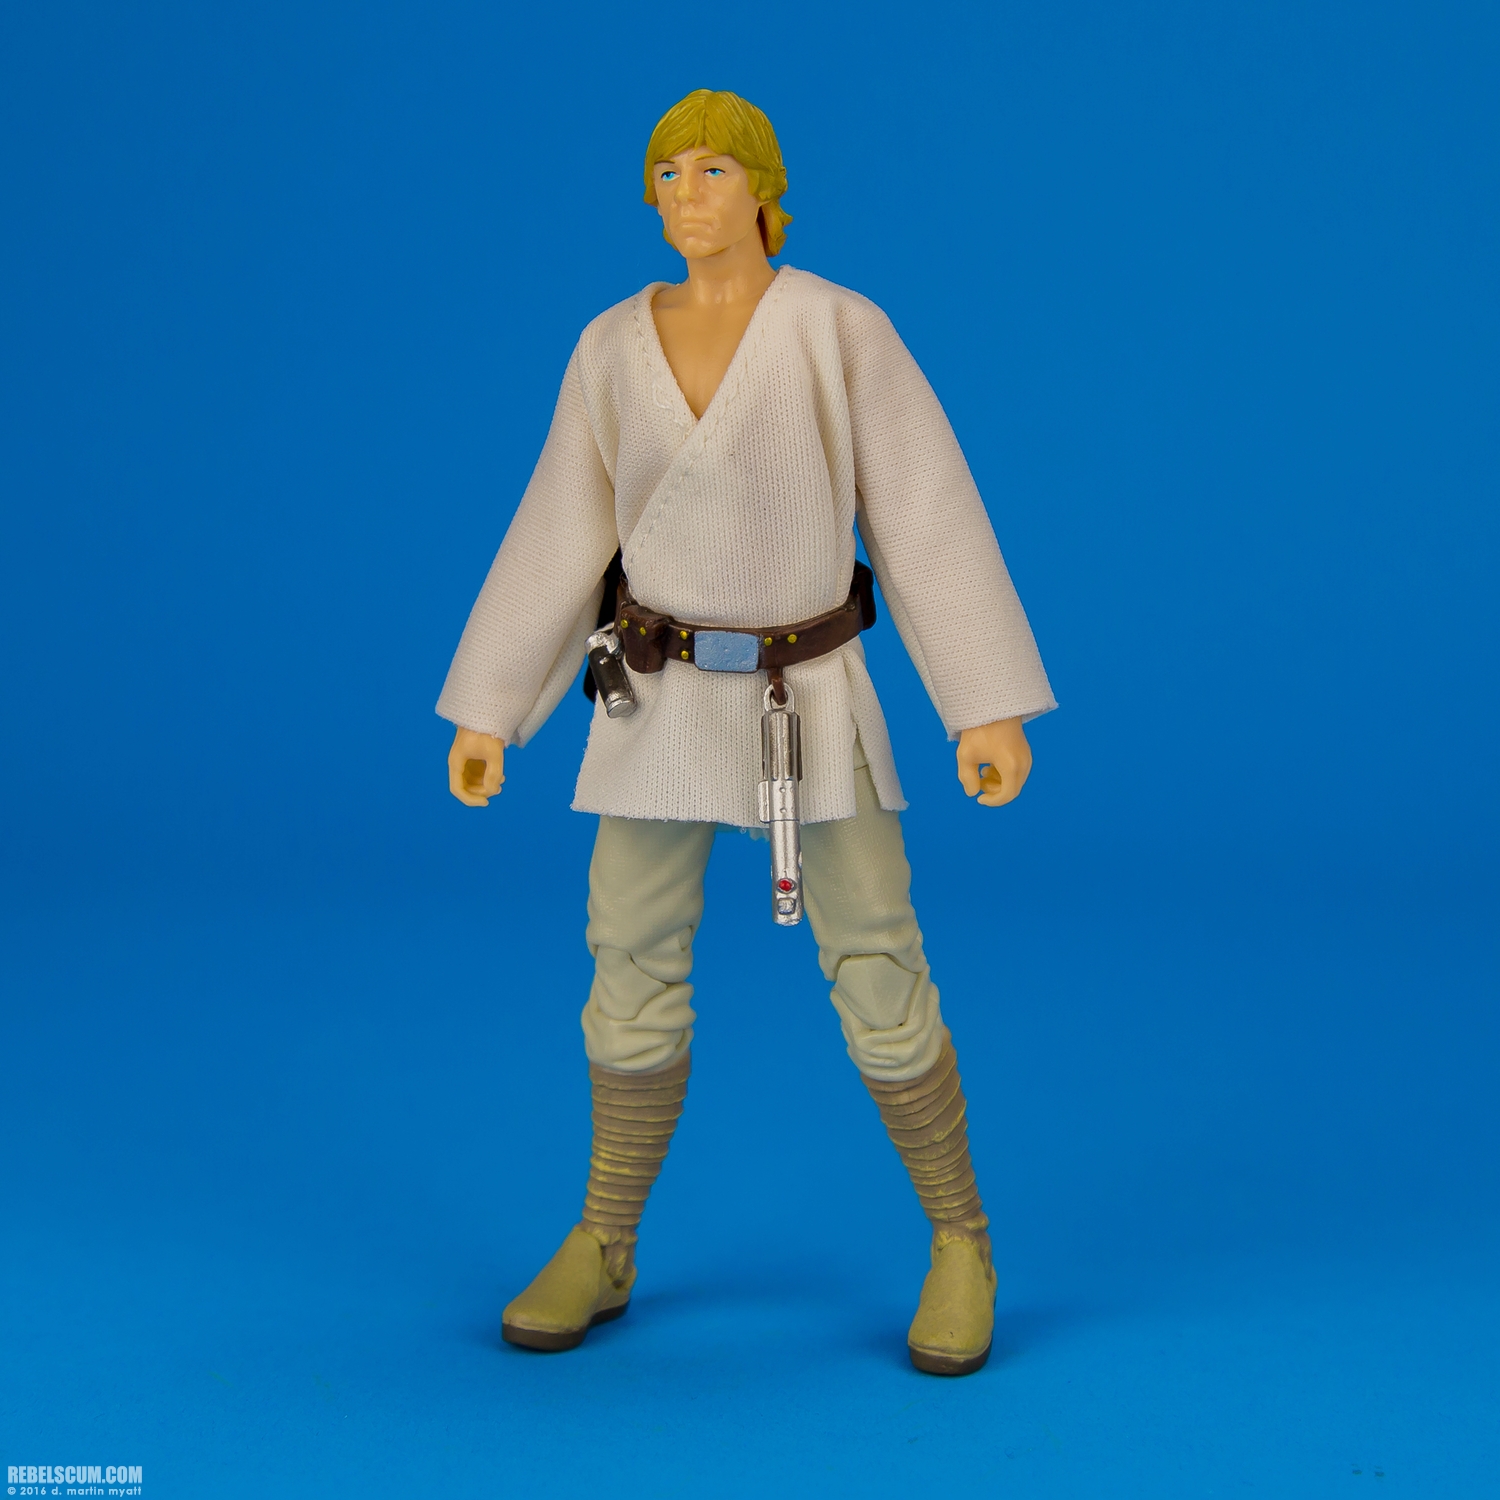 Luke-Skywalker-21-The-Black-Series-Star-Wars-Rebels-Hasbro-011.jpg